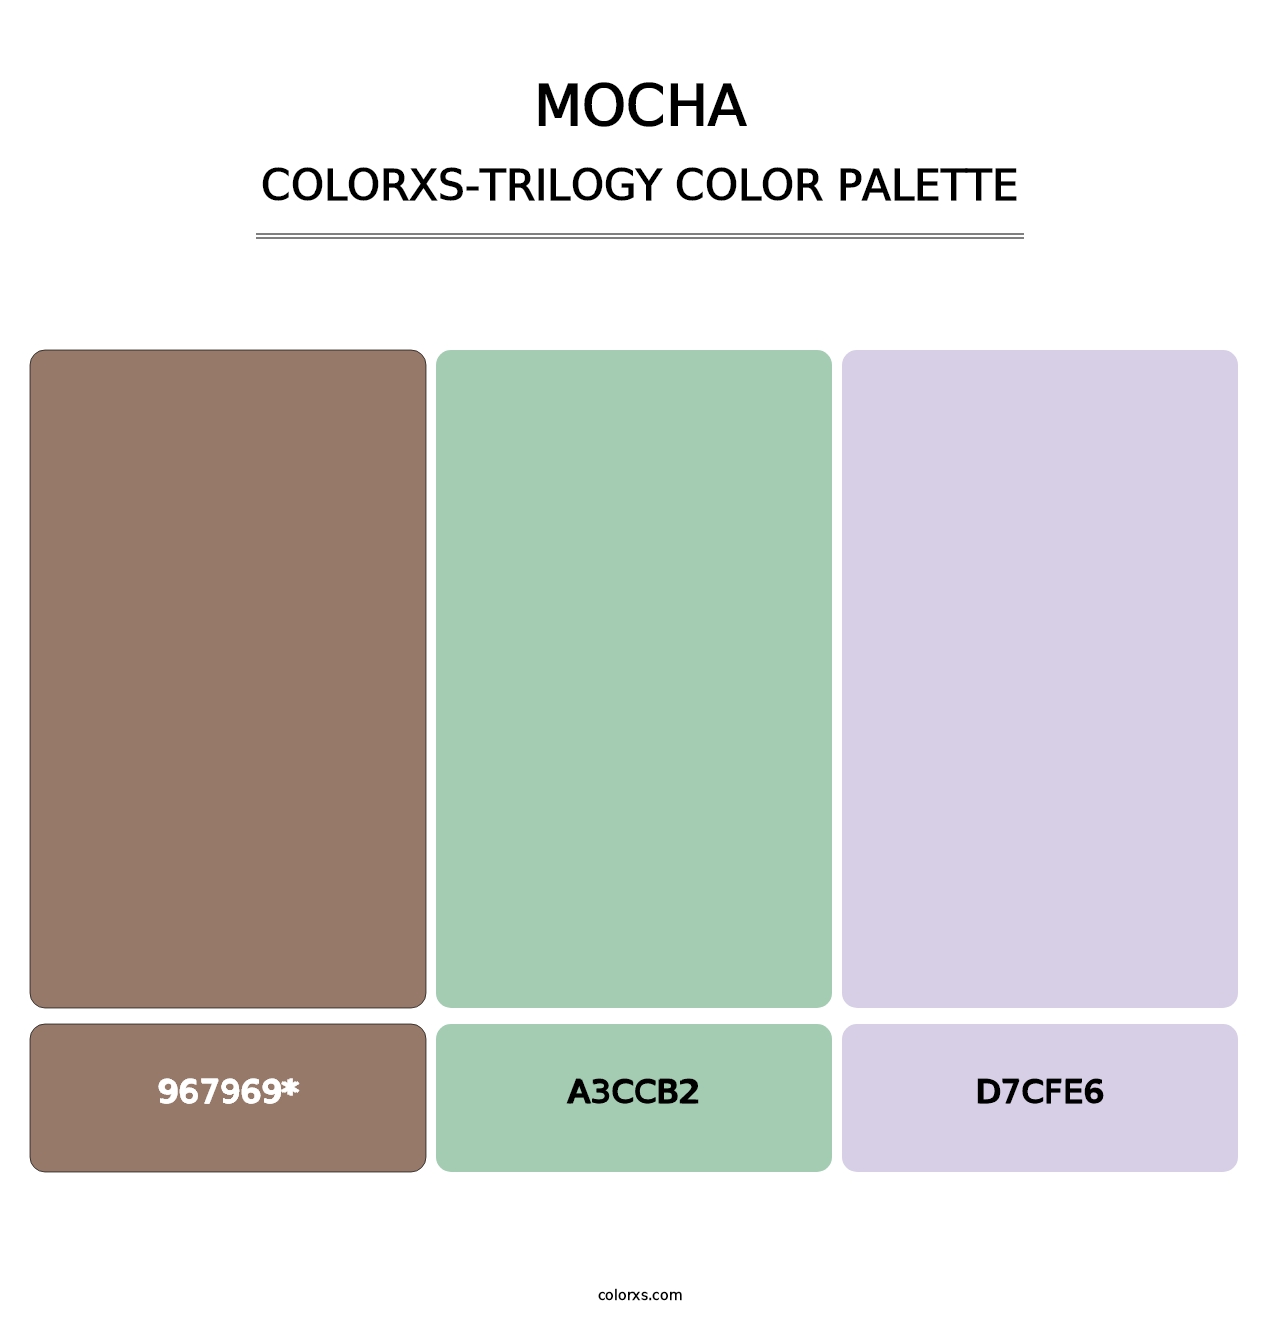 Mocha - Colorxs Trilogy Palette